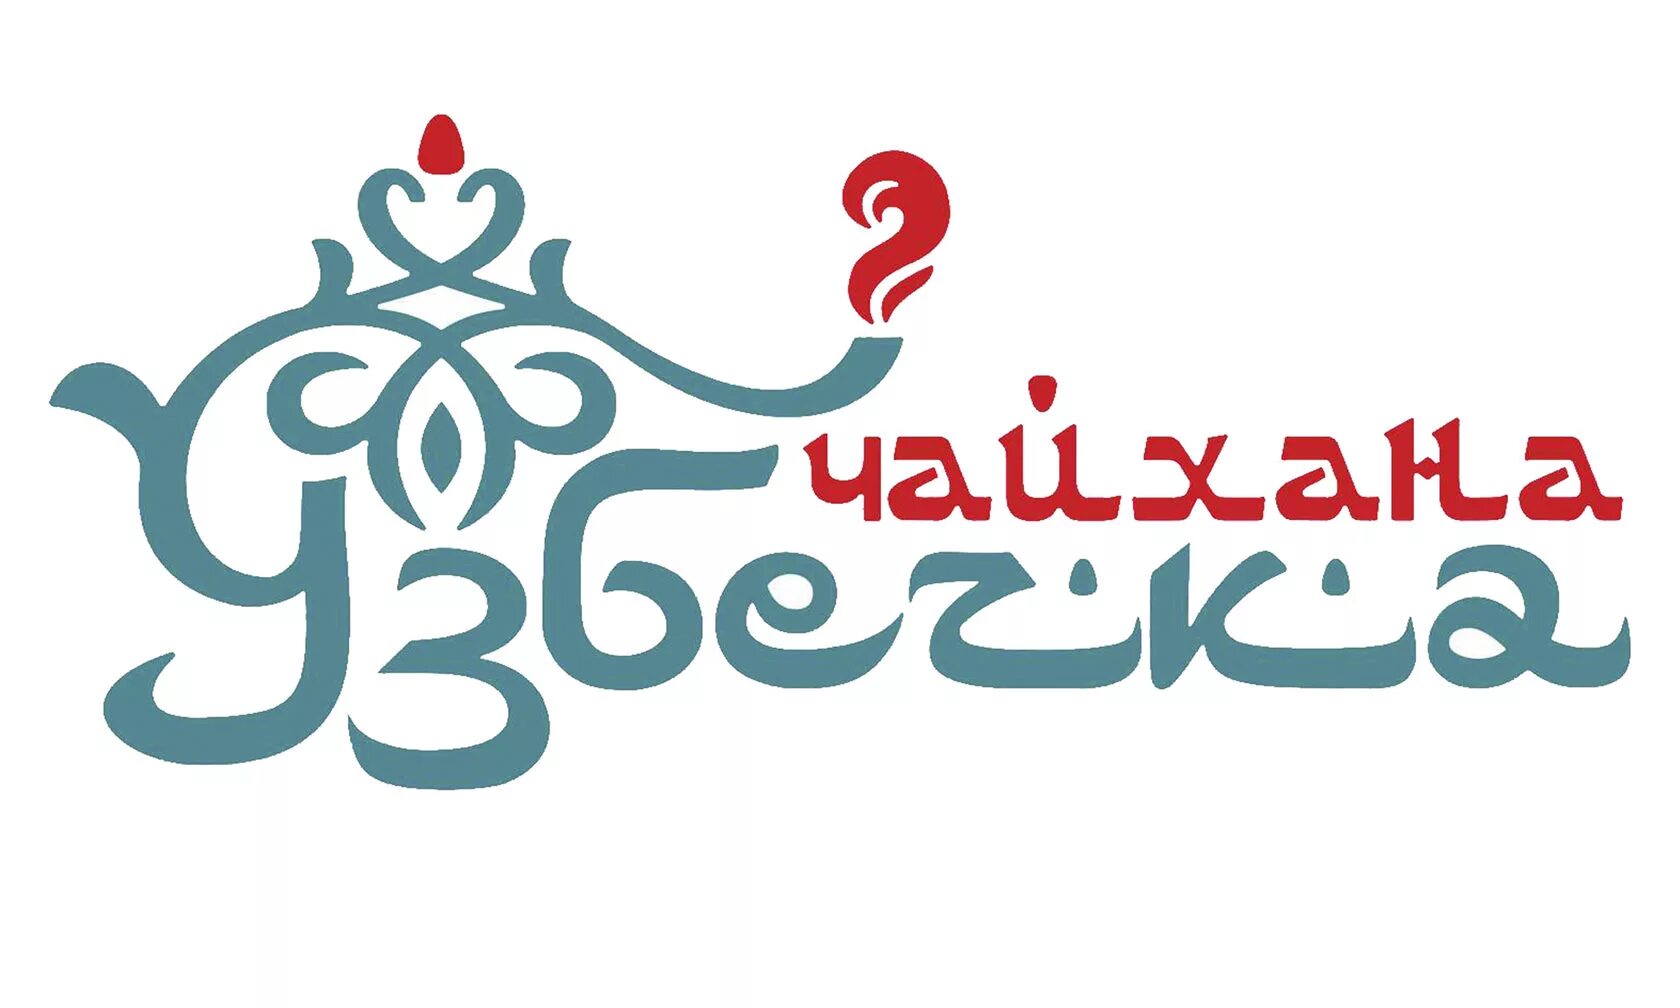 Чайхана логотип. Логотип узбекской кухни. Логотип восточного ресторана. Чайхана вывеска. Чайхана узбечка ул лермонтова 36а меню